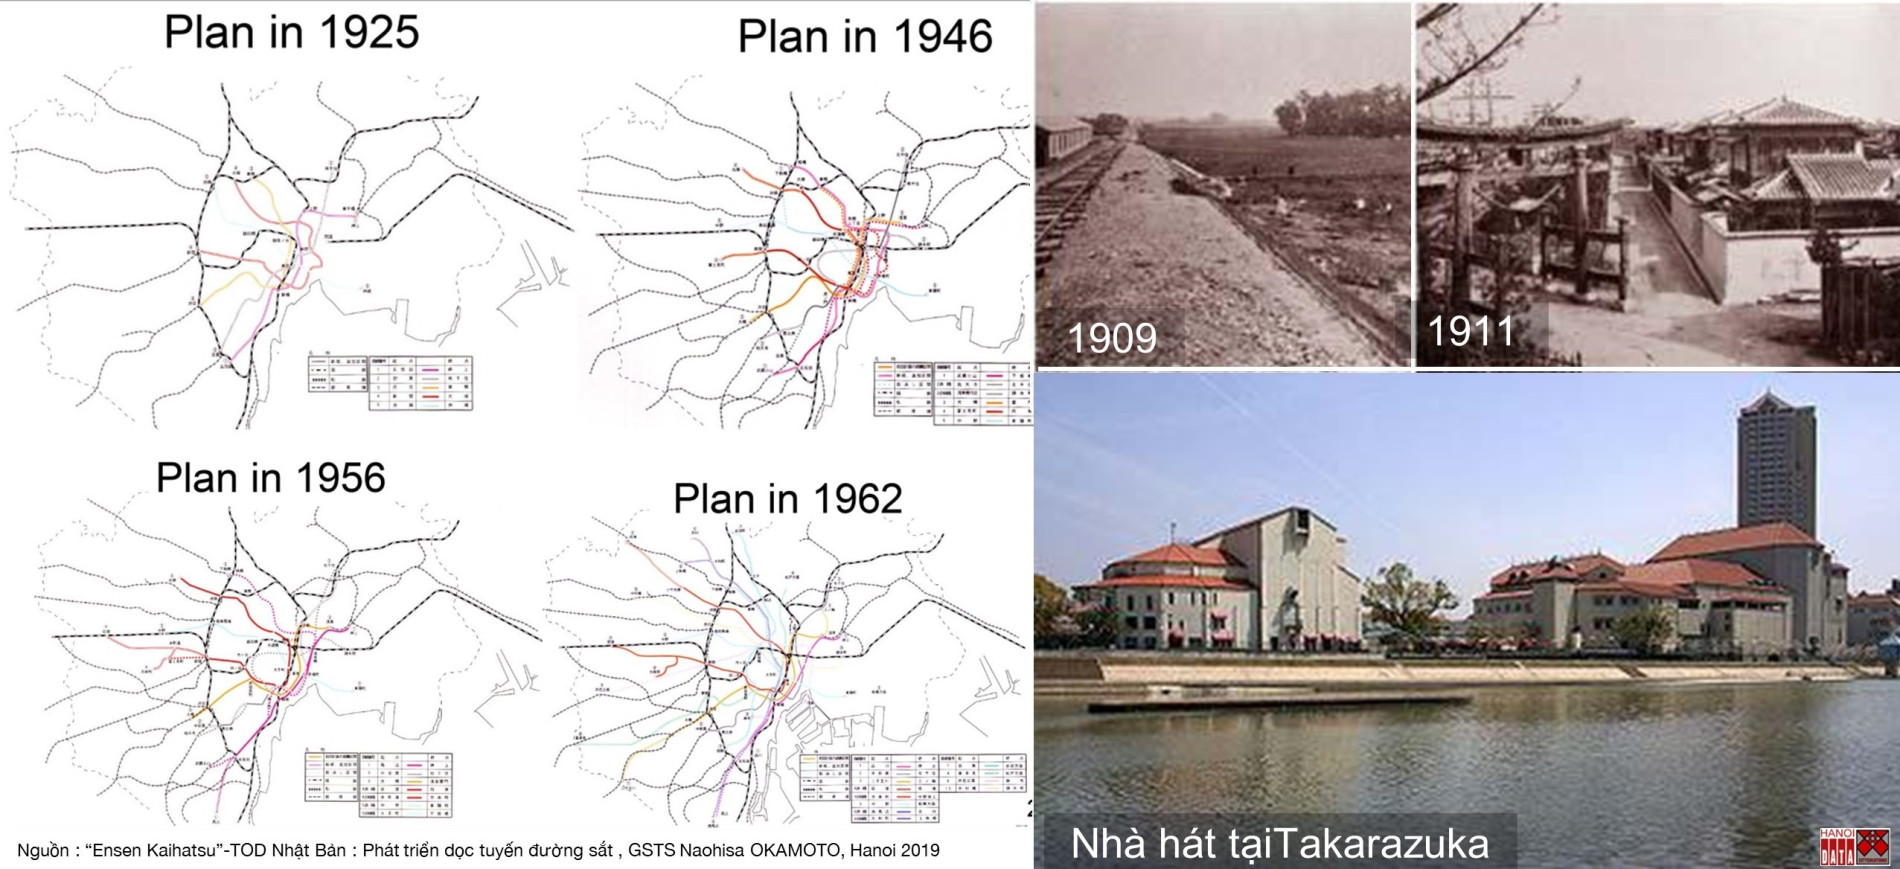 Góp ý “Điều chỉnh Quy hoạch chung xây dựng Thủ đô đến năm 2030 và tầm nhìn đến năm 2050” – Bài 11: Muốn khai thác đất đai theo định hướng TOD, Luật Đất Đai phải đi trước một bước - Tạp chí Kiến trúc Việt Nam